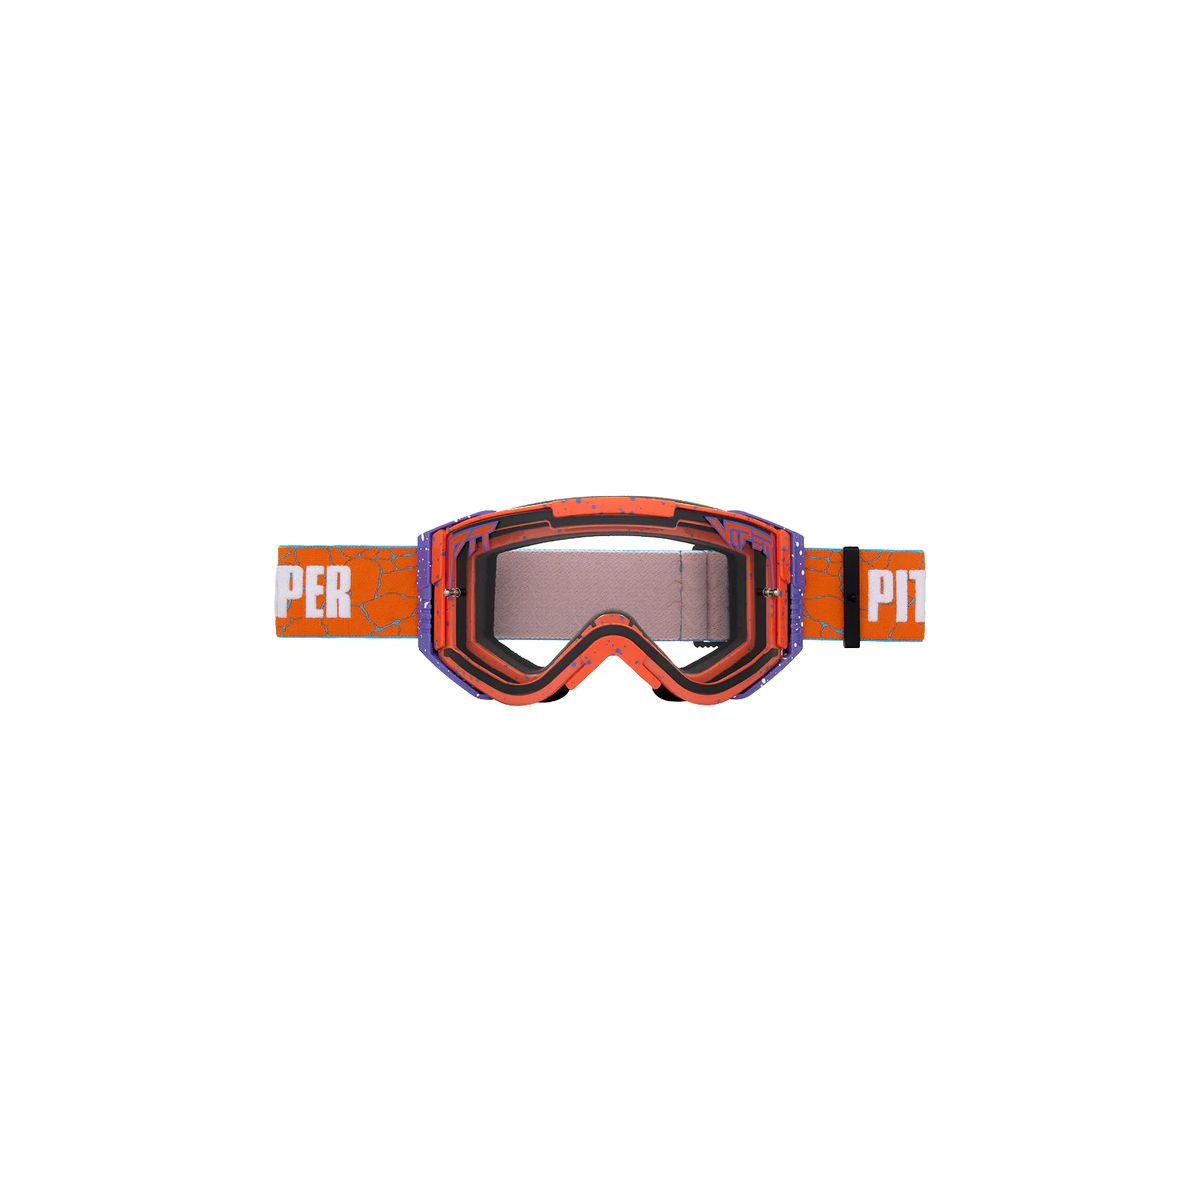 Máscaras Pit Viper Brapstrap Terremoto lente transparente para descenso, enduro o Motocross